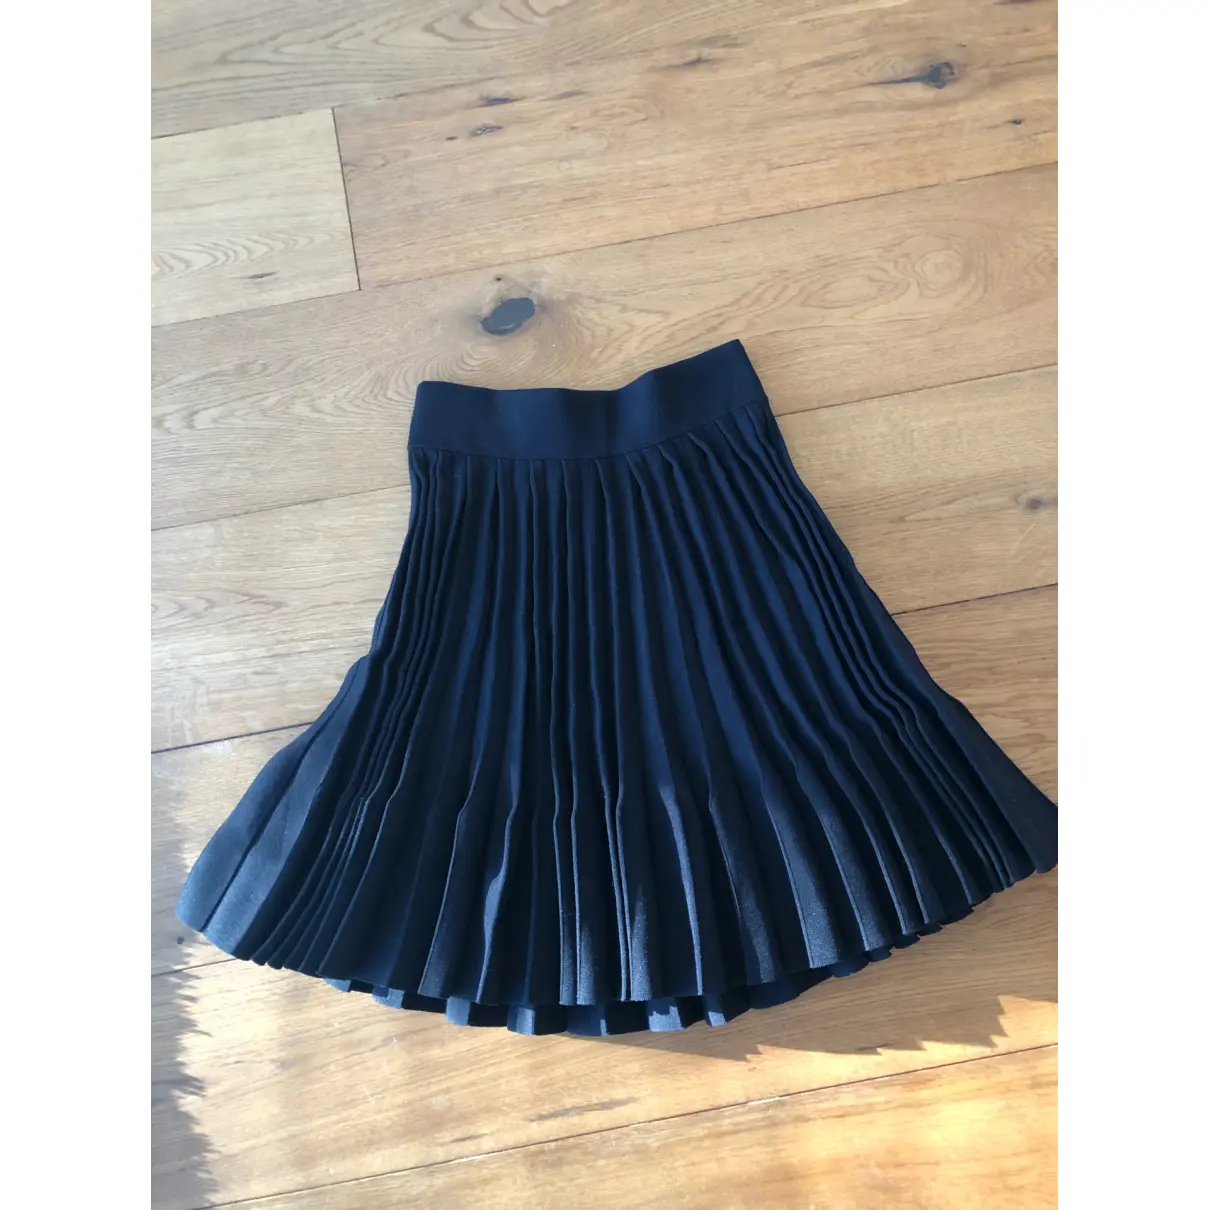 Buy Maje Fall Winter 2019 mid-length skirt online